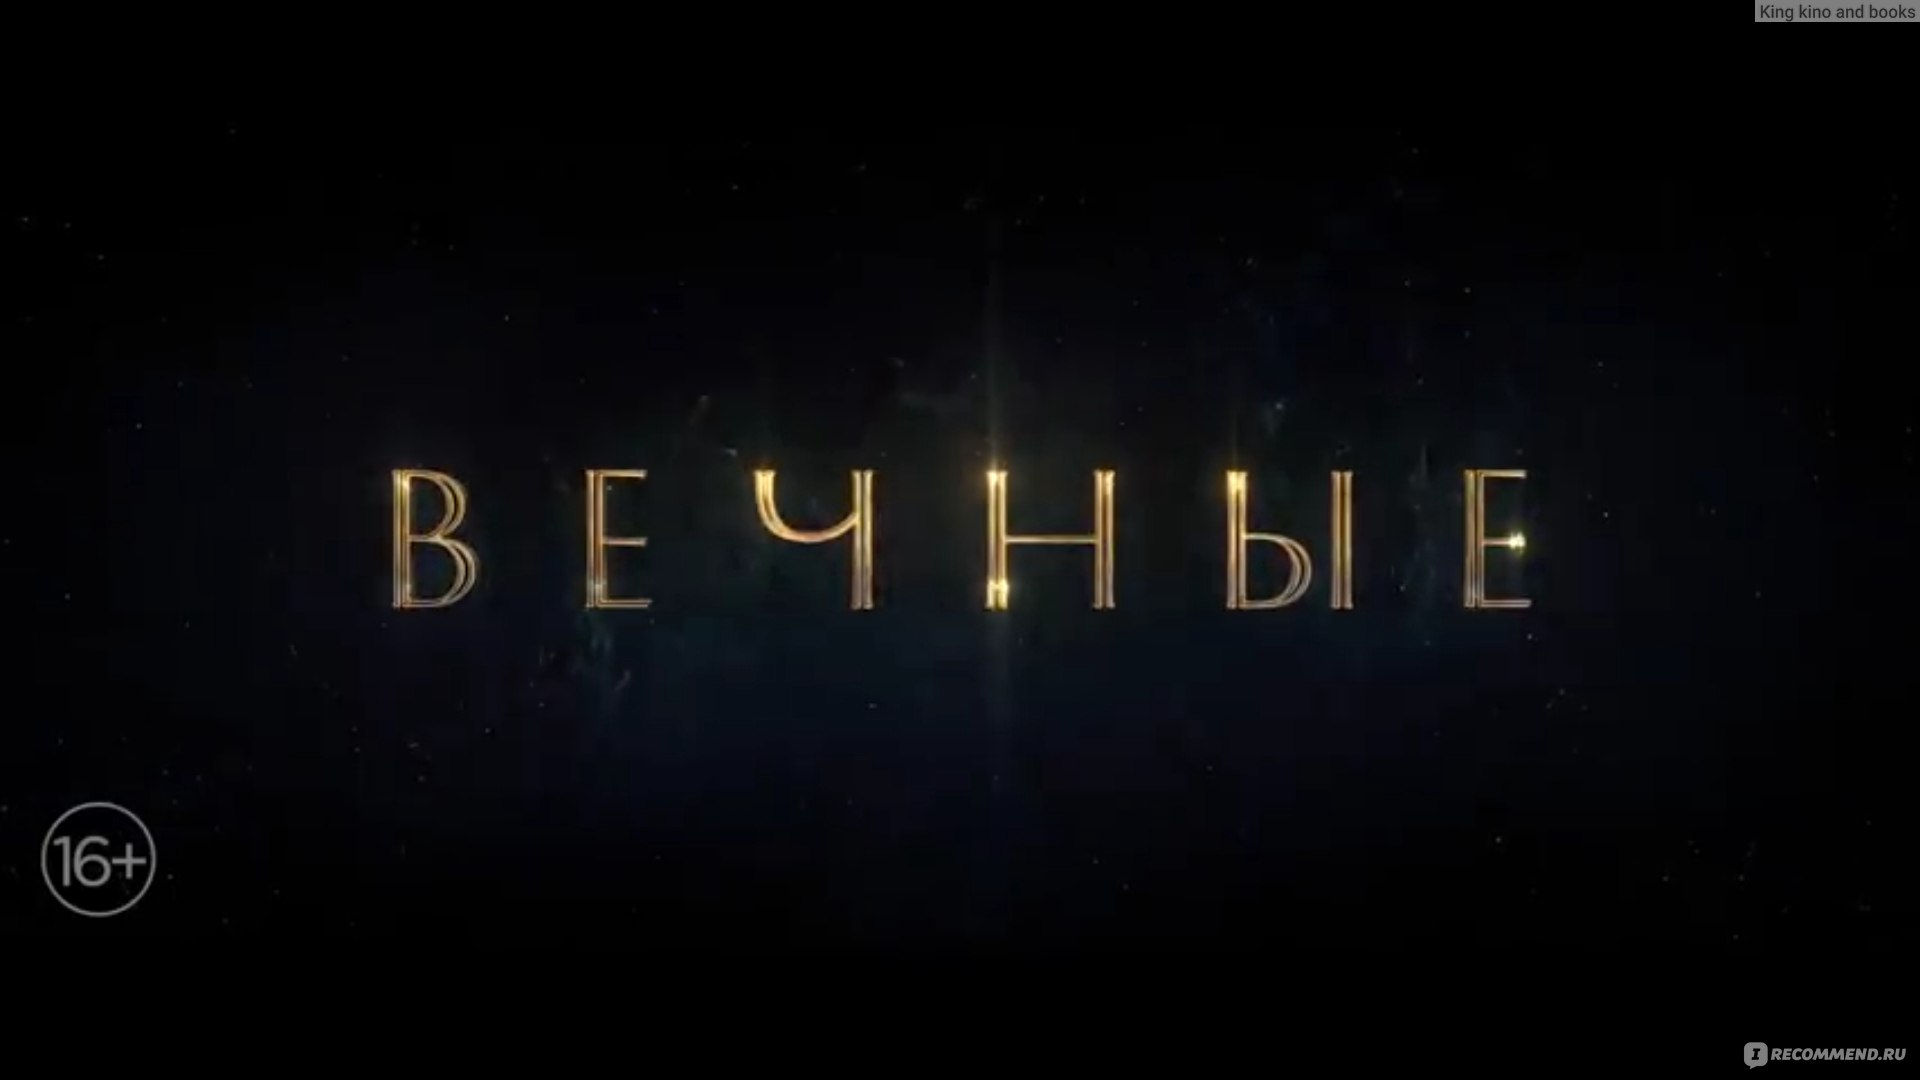 Вечные (2021, фильм) - «